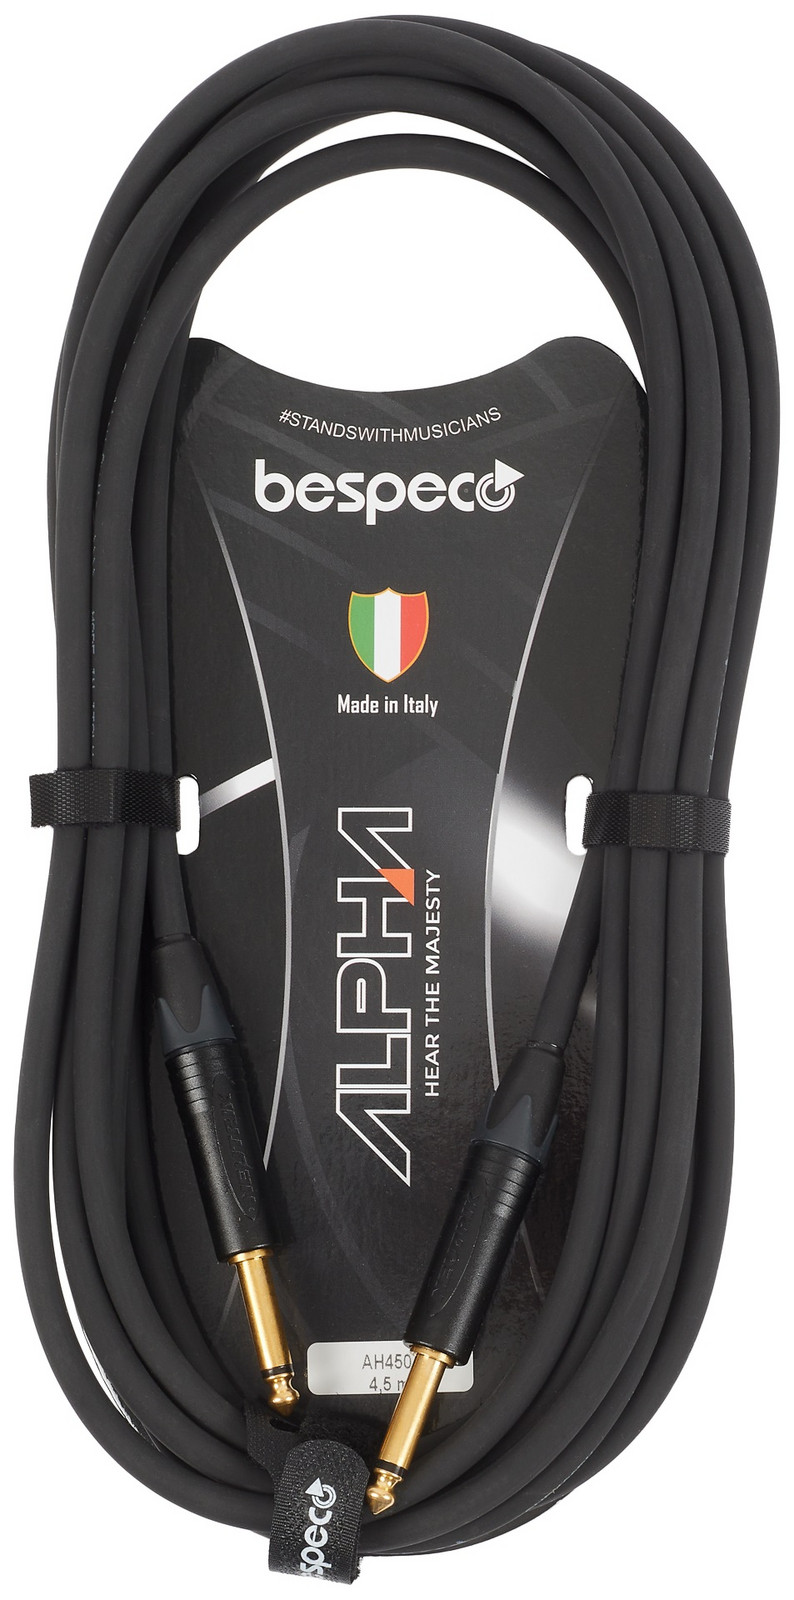 Bespeco Alpha Instrument Cable Neutrik 4.5 m